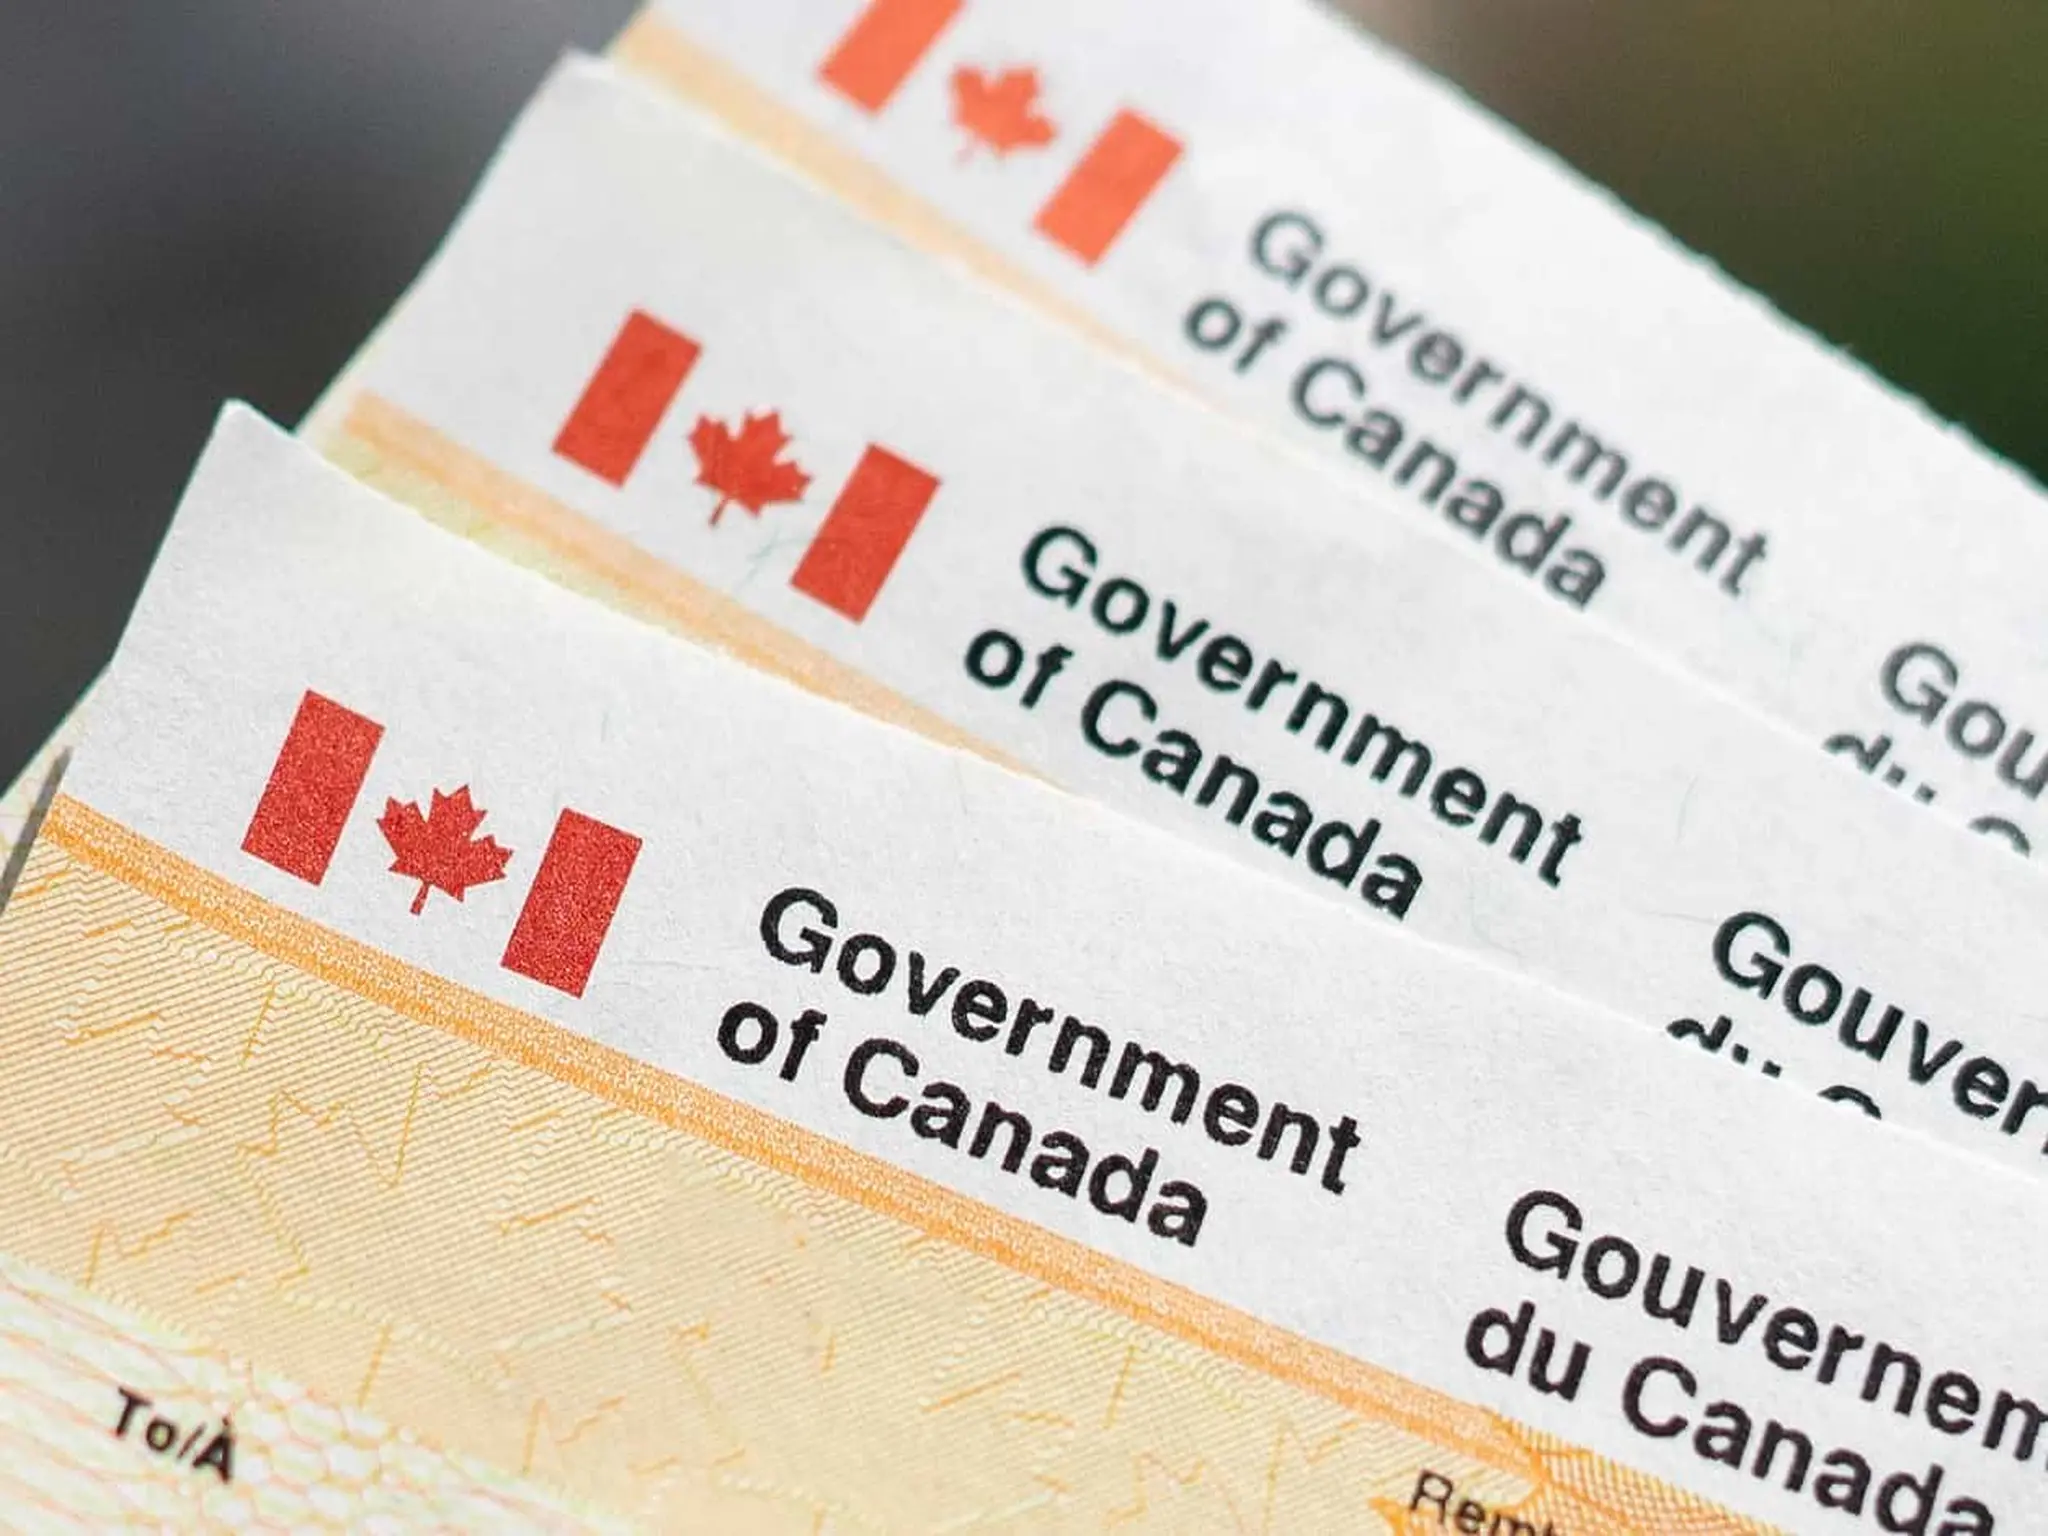 وزارة الهجرة تصدر قرارات جديدة بشأن الهجرة إلى كندا والتأشيرات المؤقتة